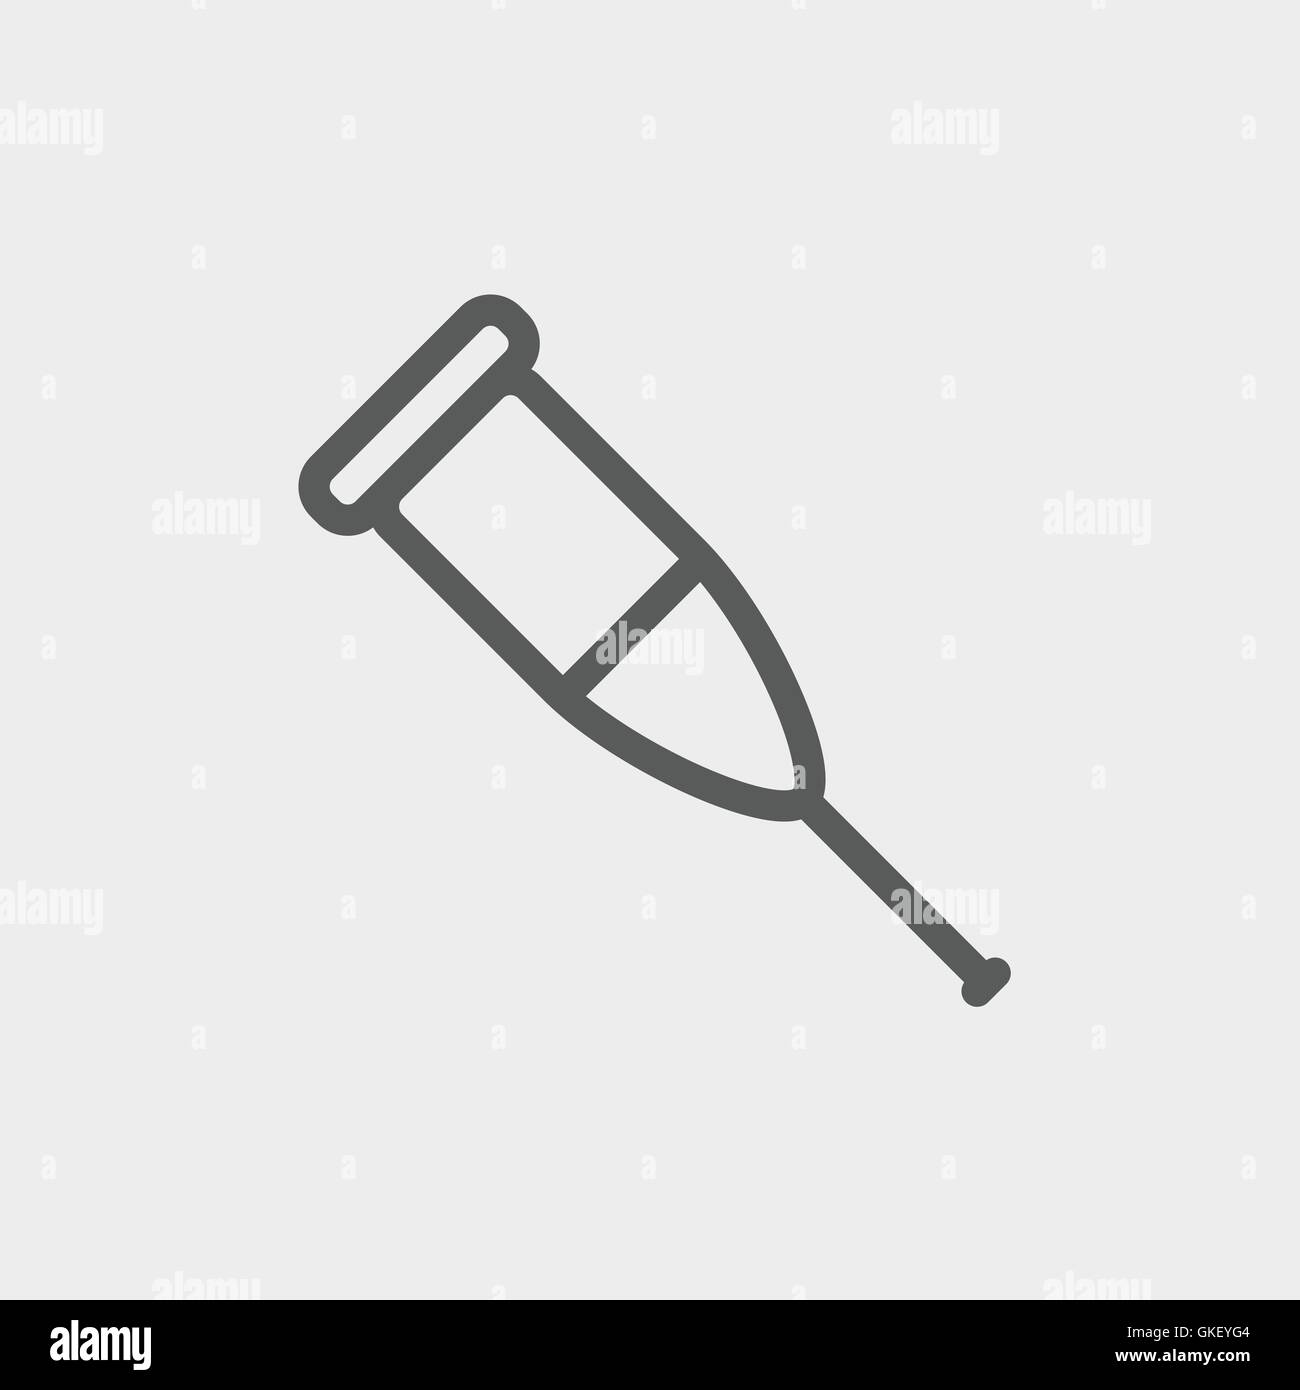 Crutch thin line icon Stock Vector